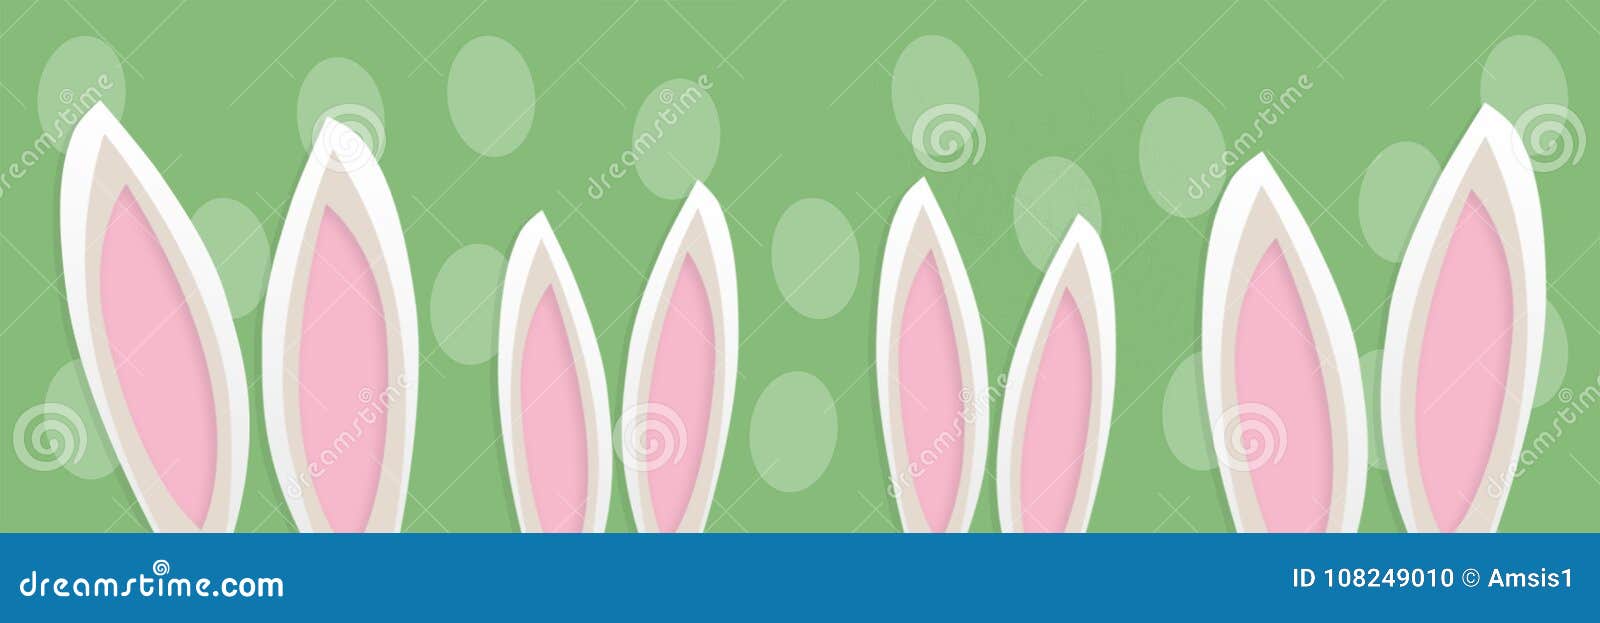 Bandera con los oídos de cuatro conejos de Pascua Los oídos son visibles pero se oculta la cabeza El color blanco y gris, pone verde el fondo con las siluetas de los huevos de Pascua